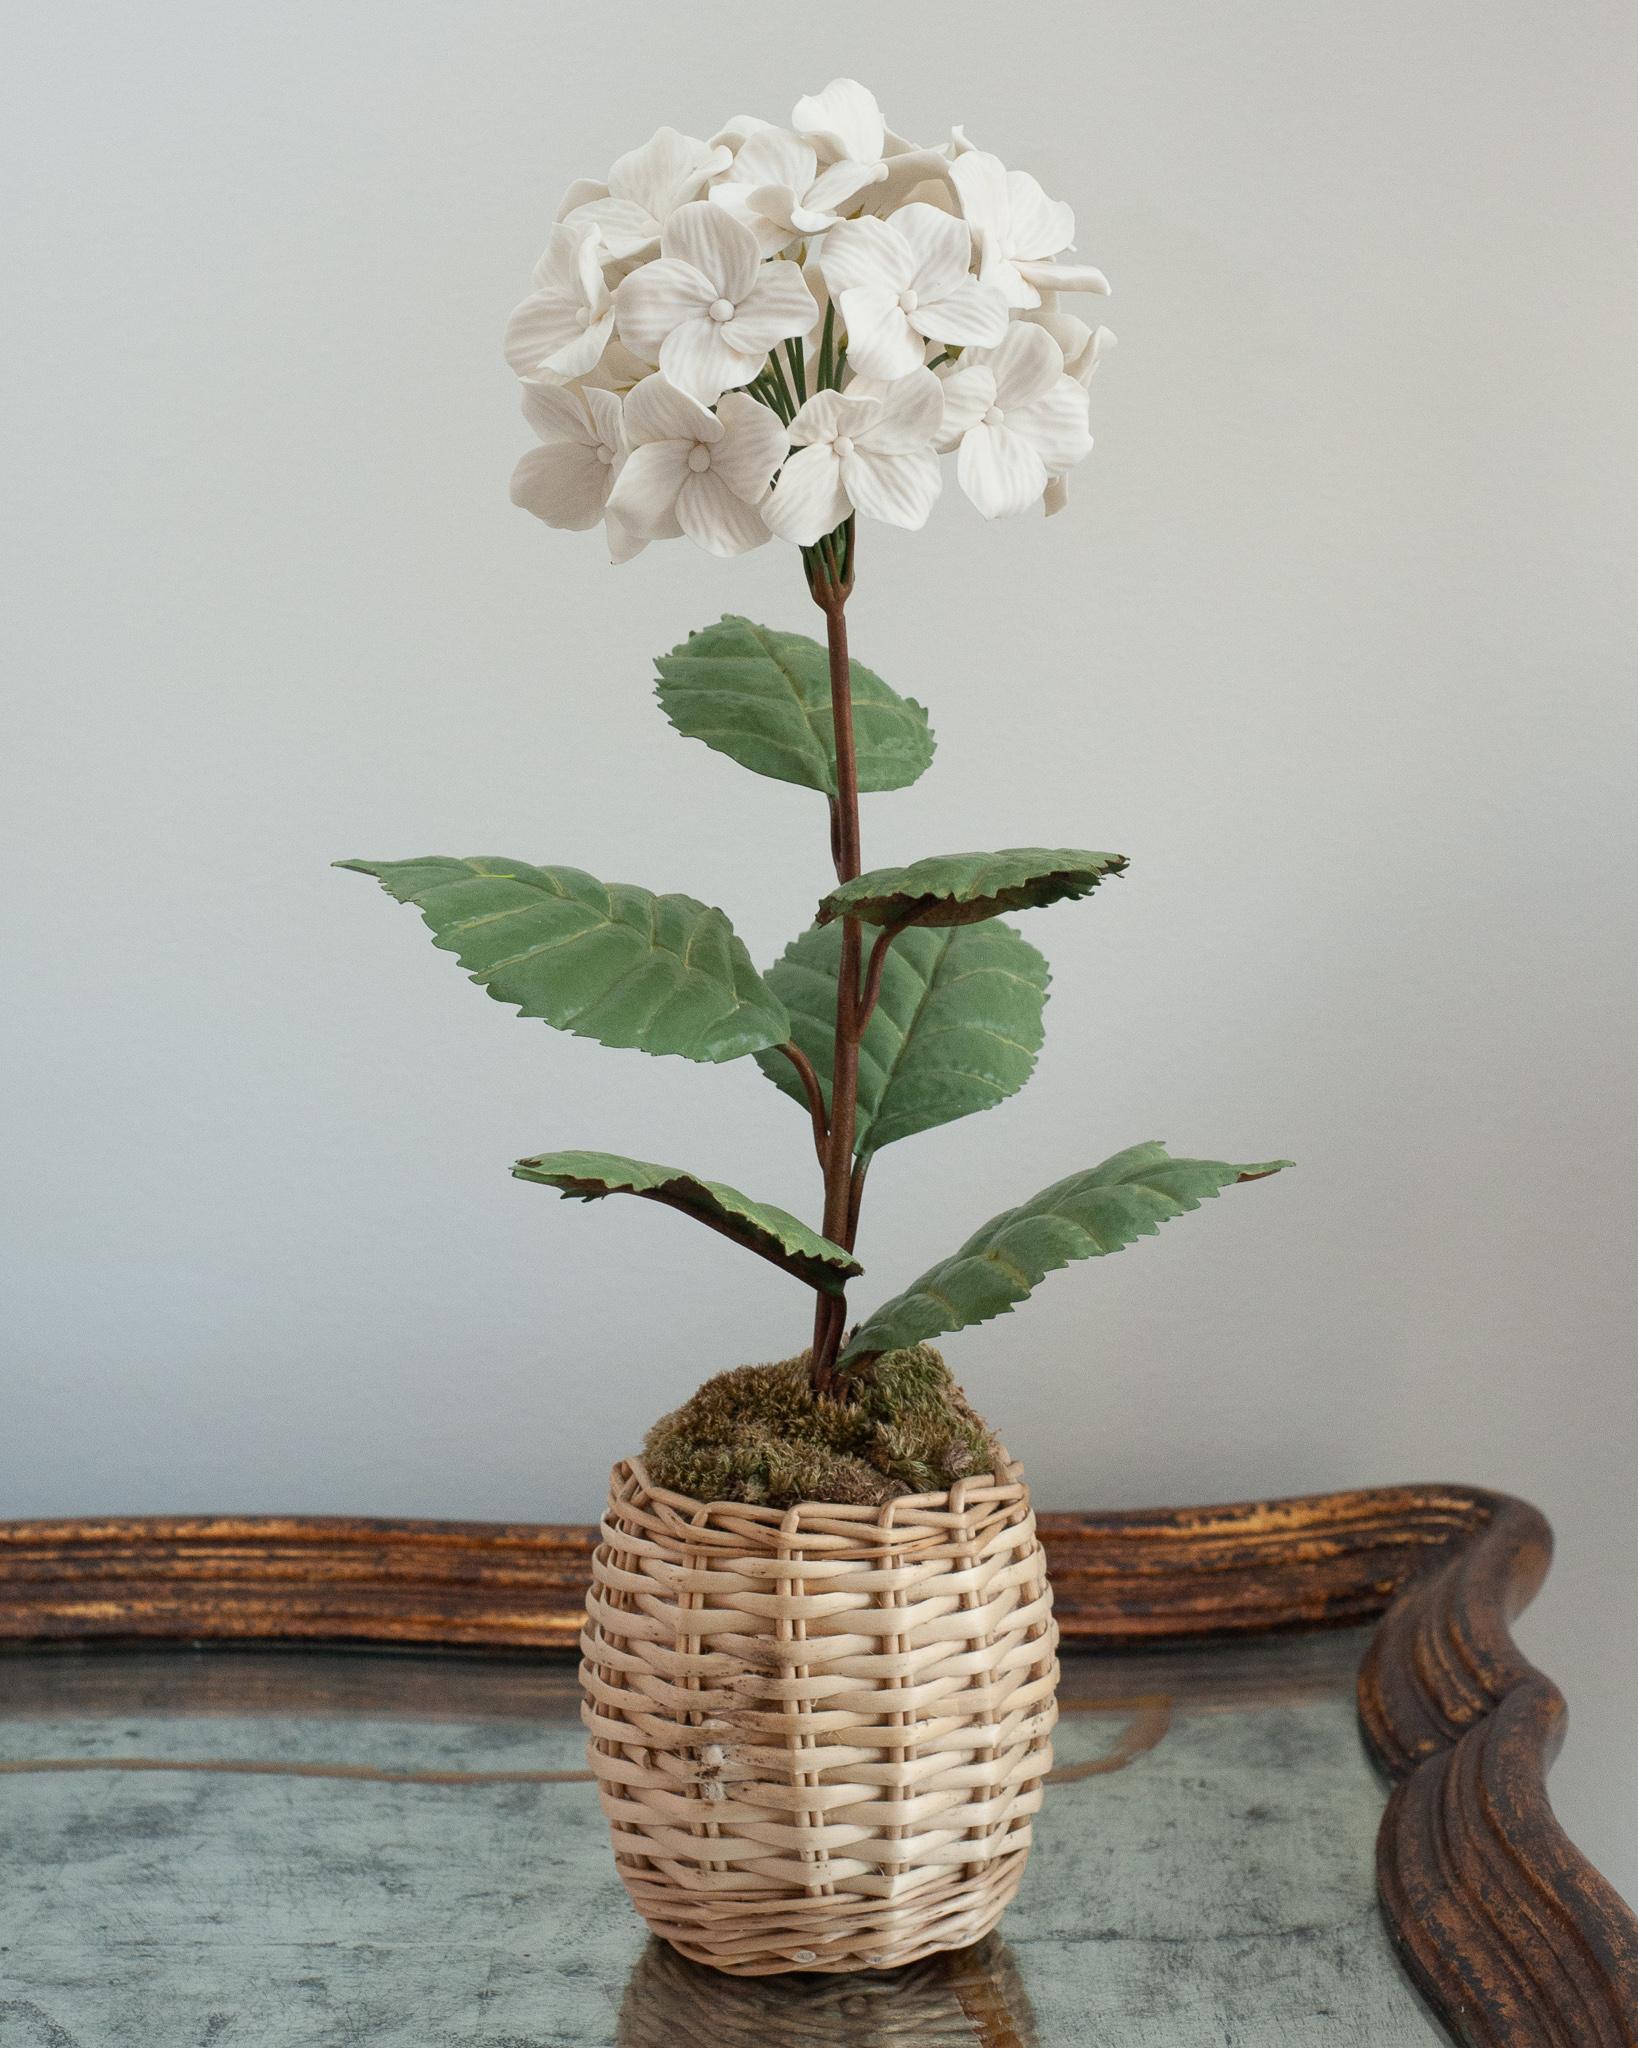 Verschönern Sie Ihren Tisch mit diesen zarten Porzellanblumen des französischen Künstlers Samuel Mazy. Diese weiße Hortensie ist aus Biskuitporzellan handgefertigt, mit handbemalten Kupferblättern und -stängeln, und steht in einem Weidentopf. 
Eine